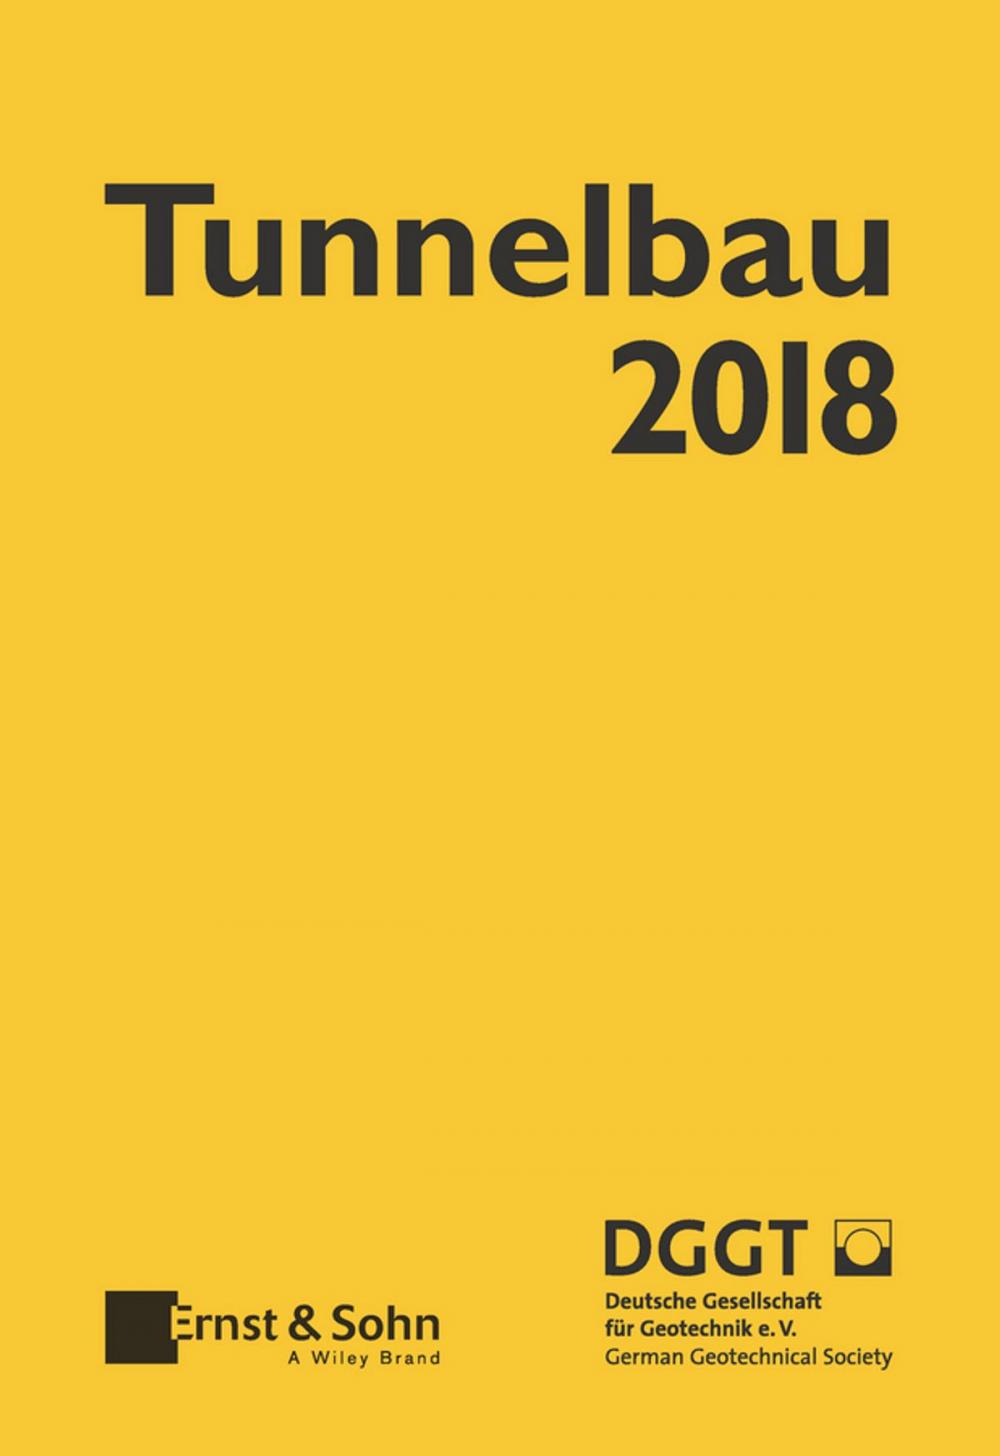 Big bigCover of Taschenbuch für den Tunnelbau 2018